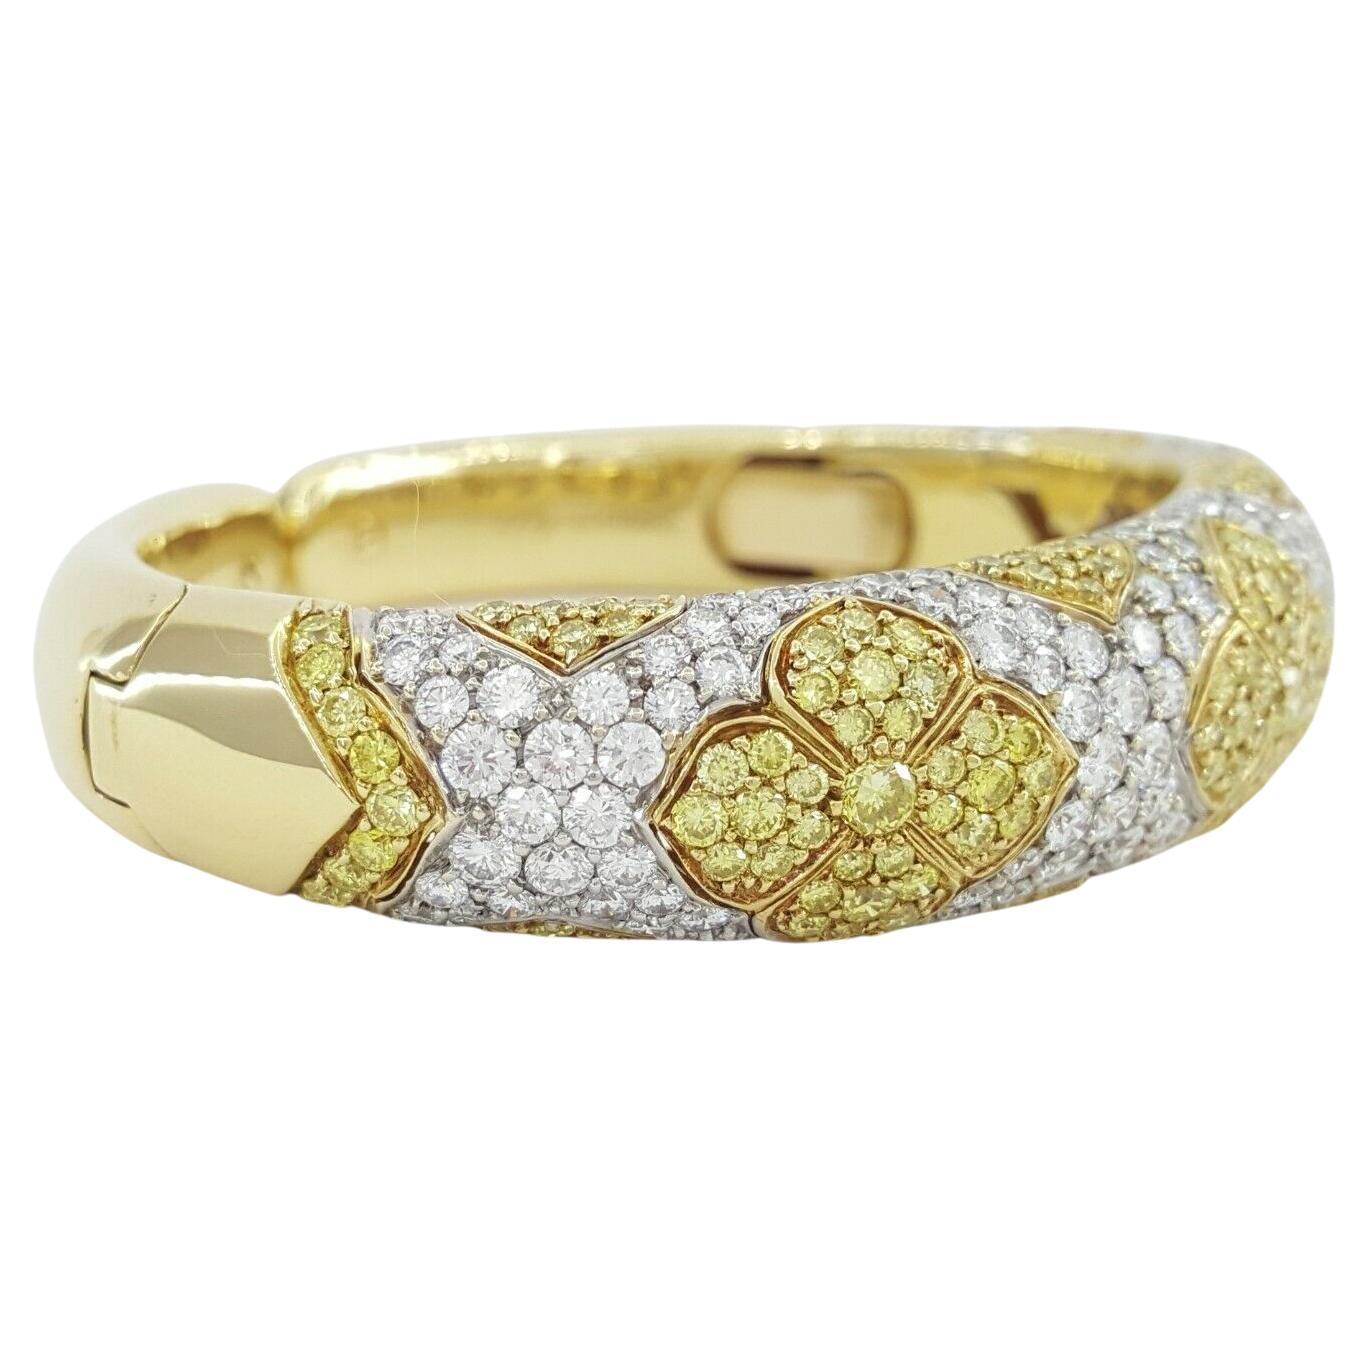 Bvlgari 10.69 ct Yellow & White Diamond 18k Yellow Gold Cuff Bangle. 

Le bracelet pèse 60,5 grammes. Les mesures du bracelet sont les suivantes : longueur de 6,25